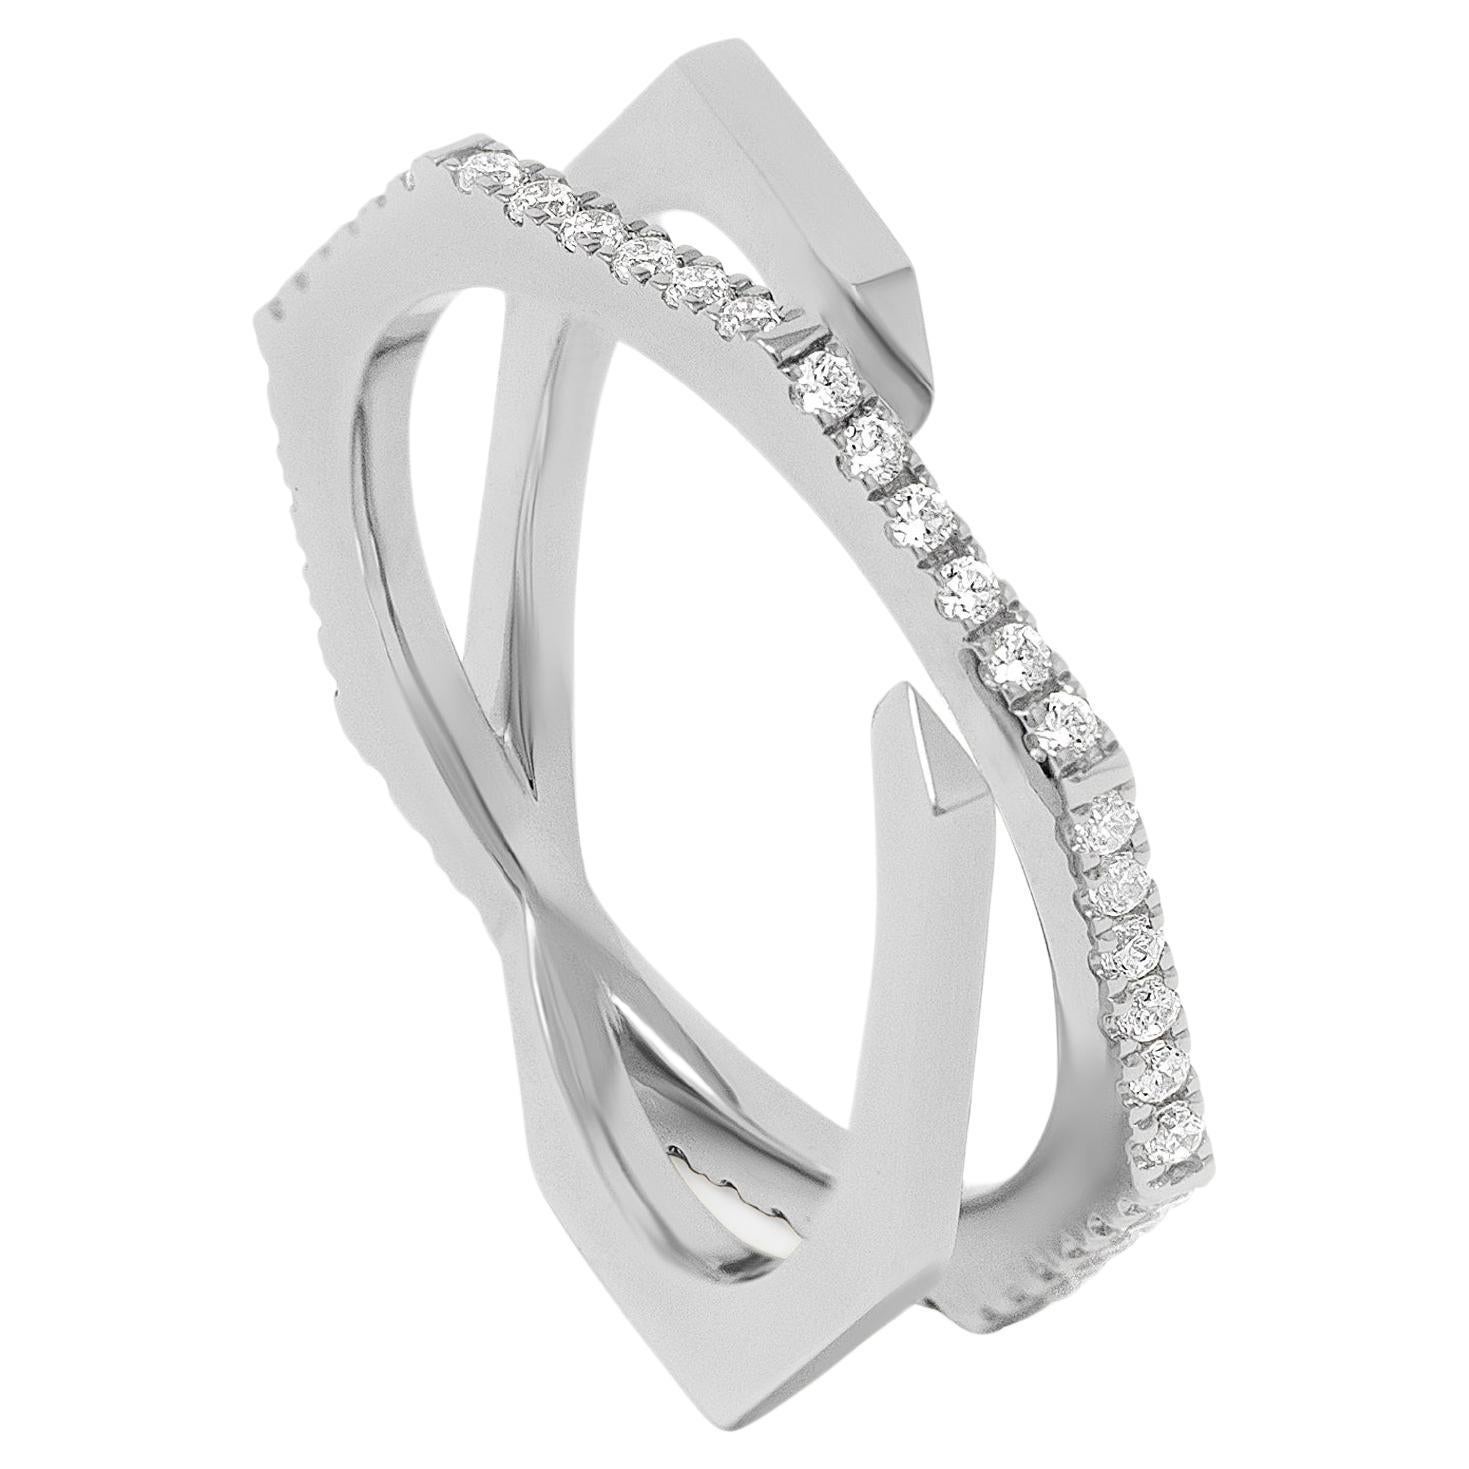 0.44 Carat Round Brilliant-Cut White Diamonds Pave Platinum Xavi Ring